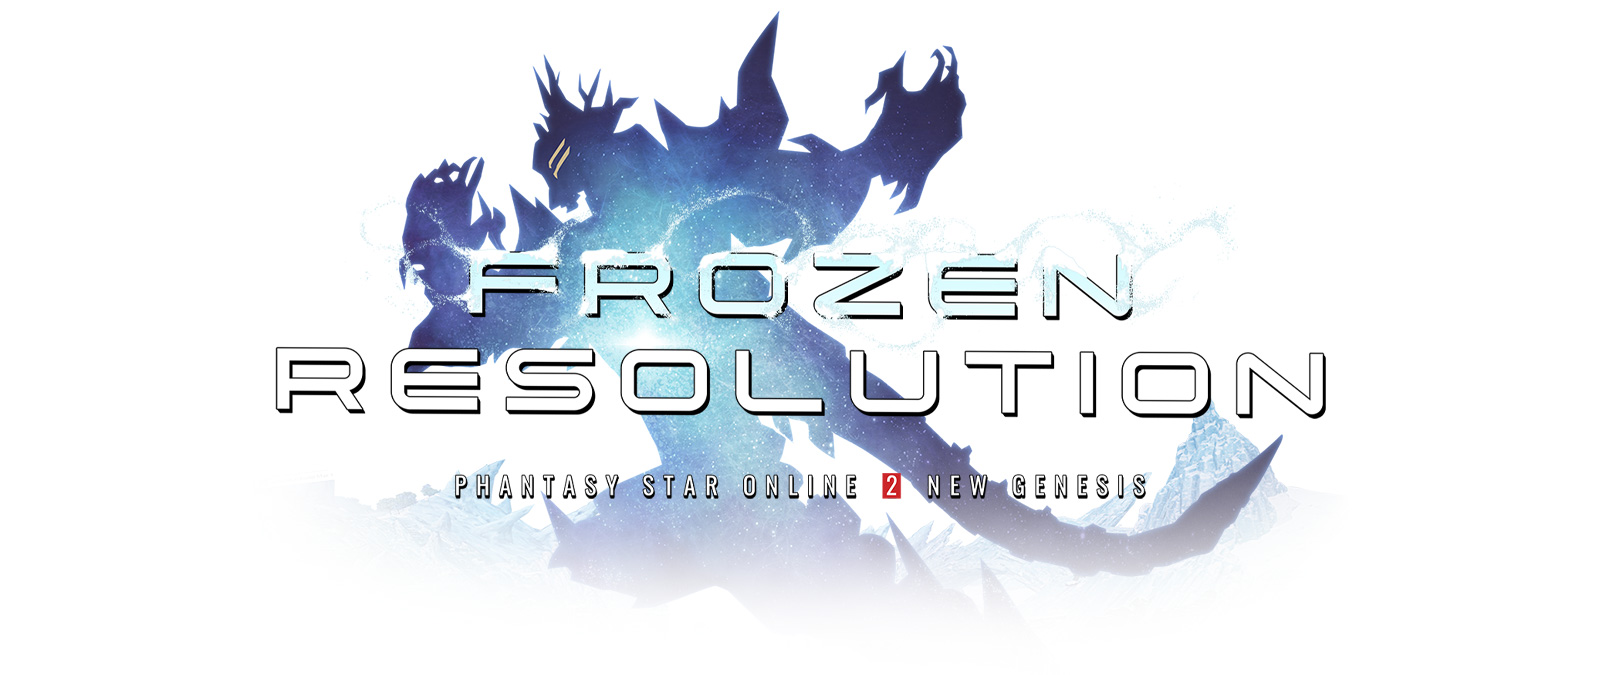 Παγωμένη ανάλυση, Phantasy Star Online 2 New Genesis, η σιλουέτα μιας πανοπλίας είναι καλυμμένη από πάγο.